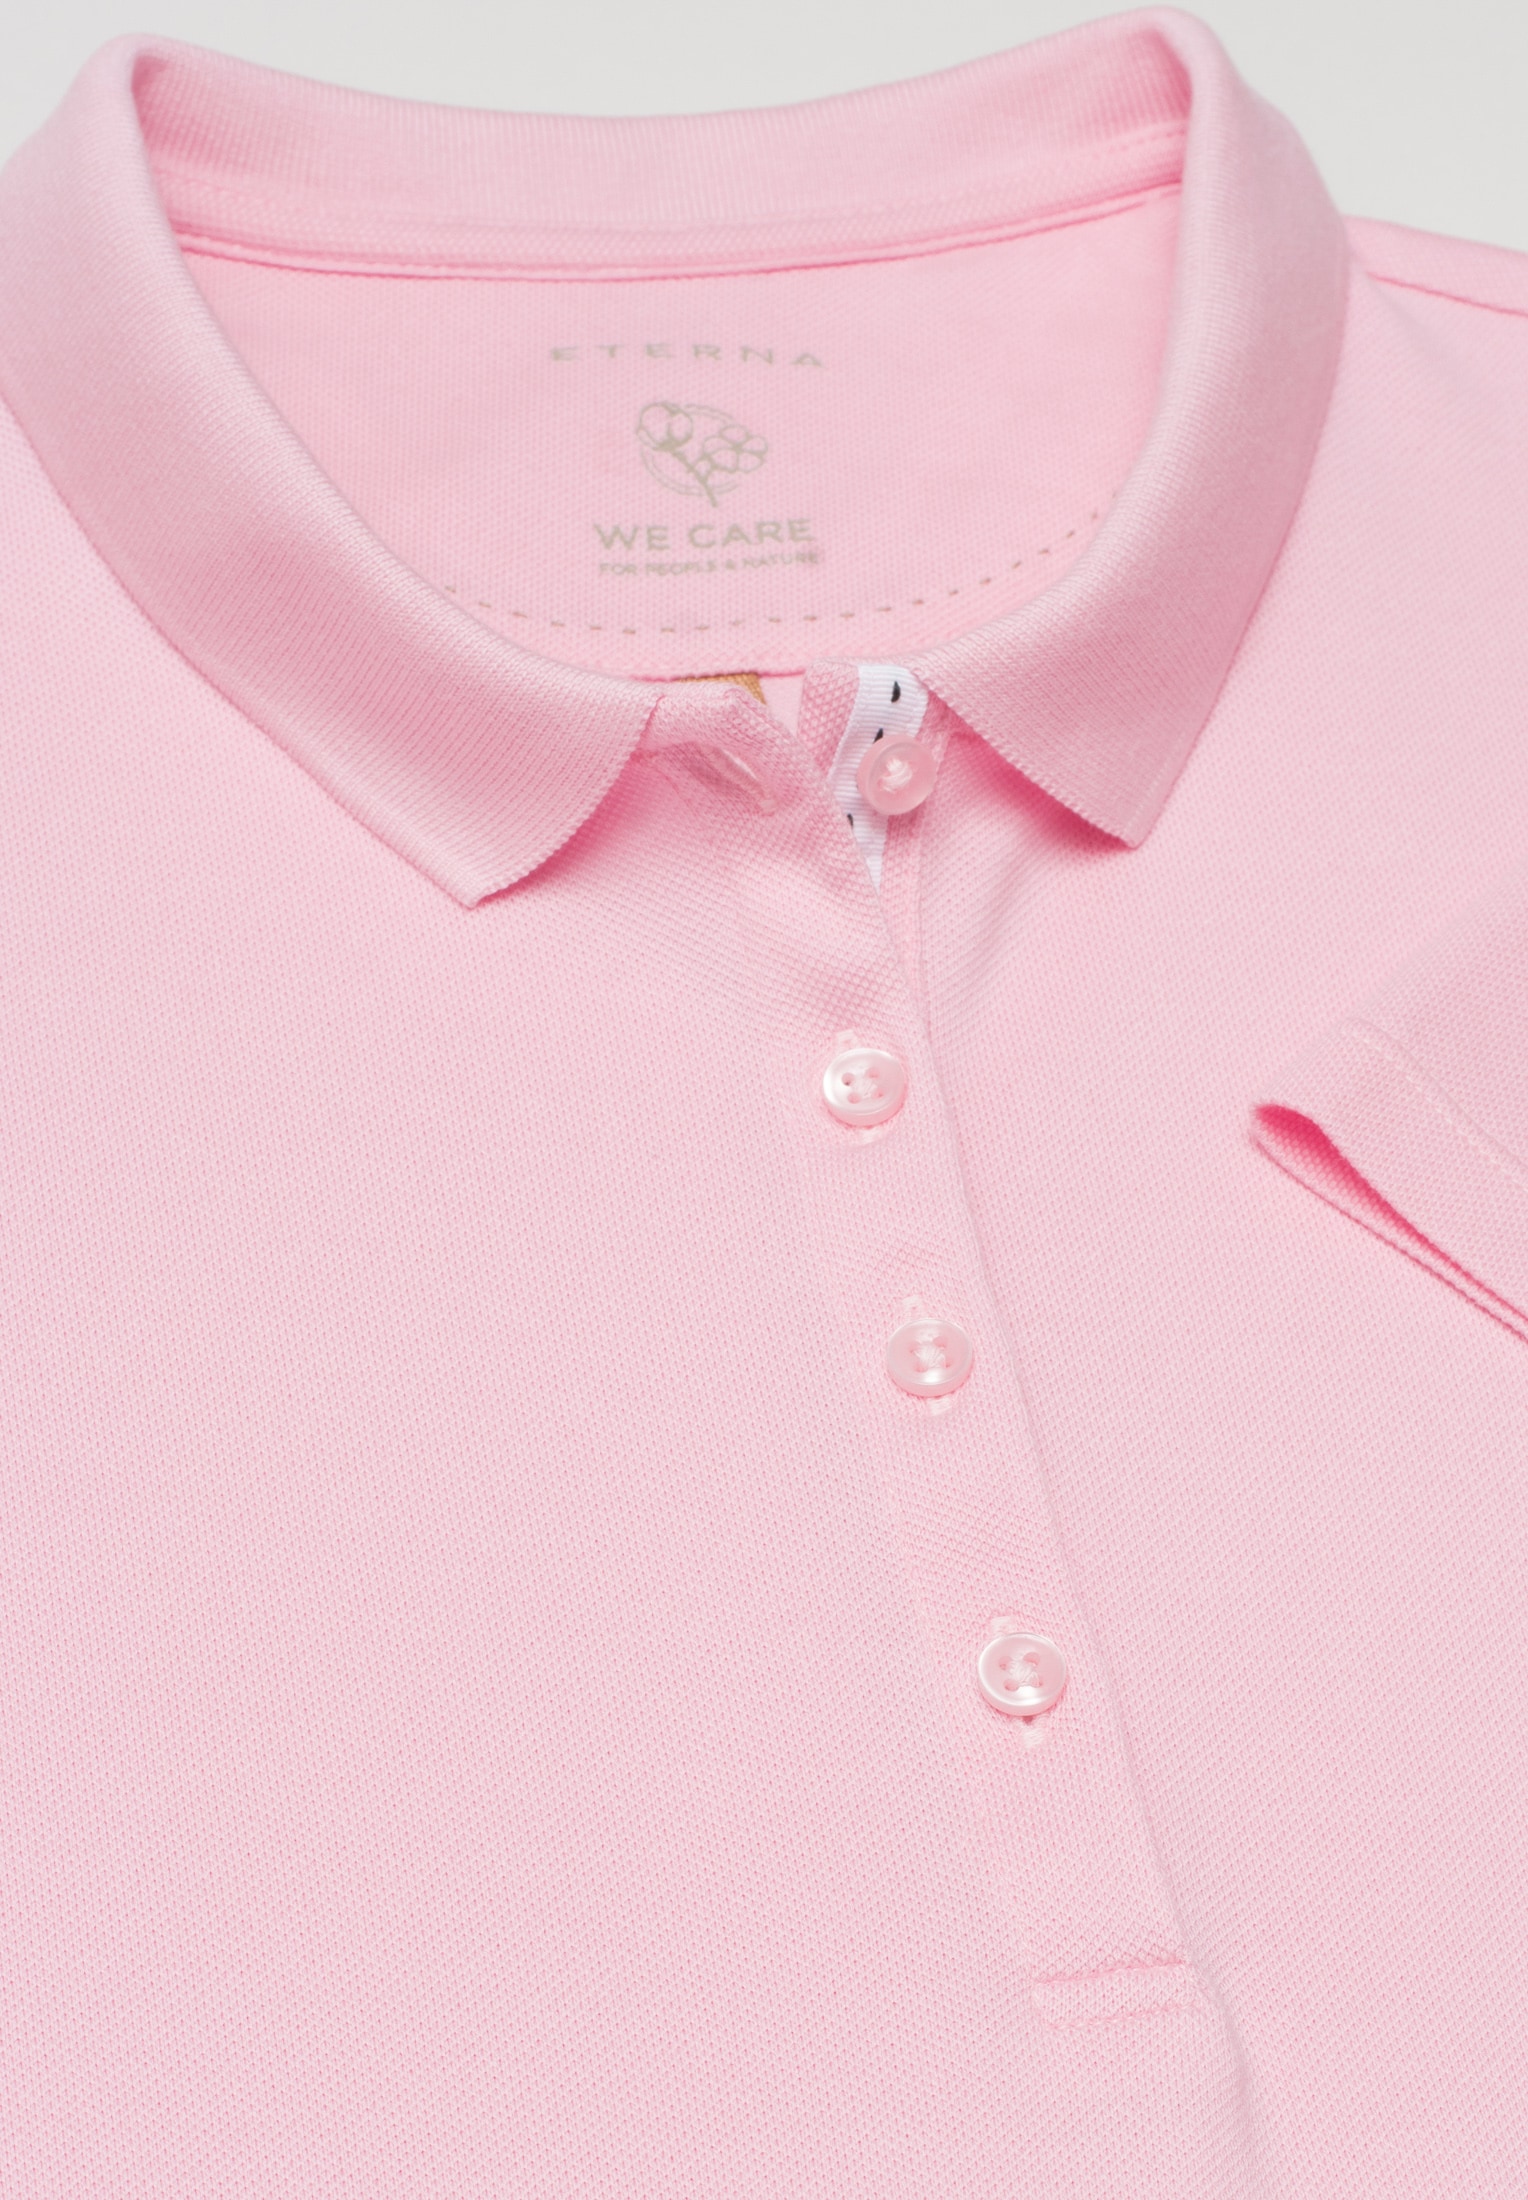 Poloshirt in unifarben | | pink 2SP00006-15-12-L-1/2 L pink | soft | Kurzarm soft